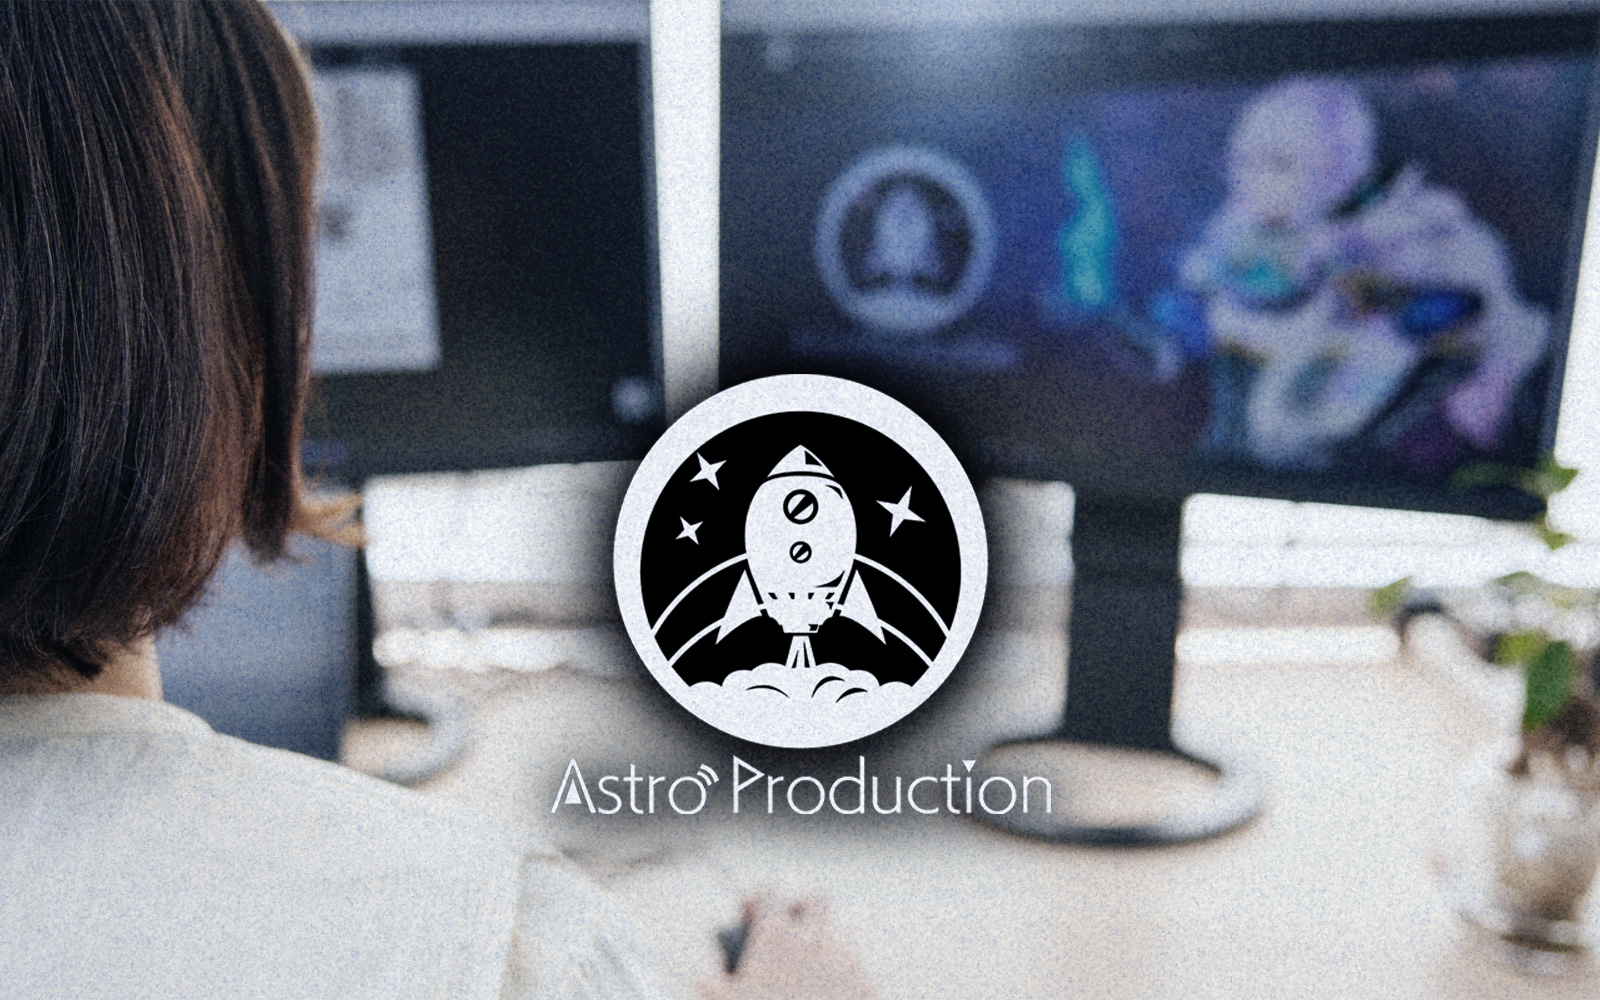 株式会社Astro Production